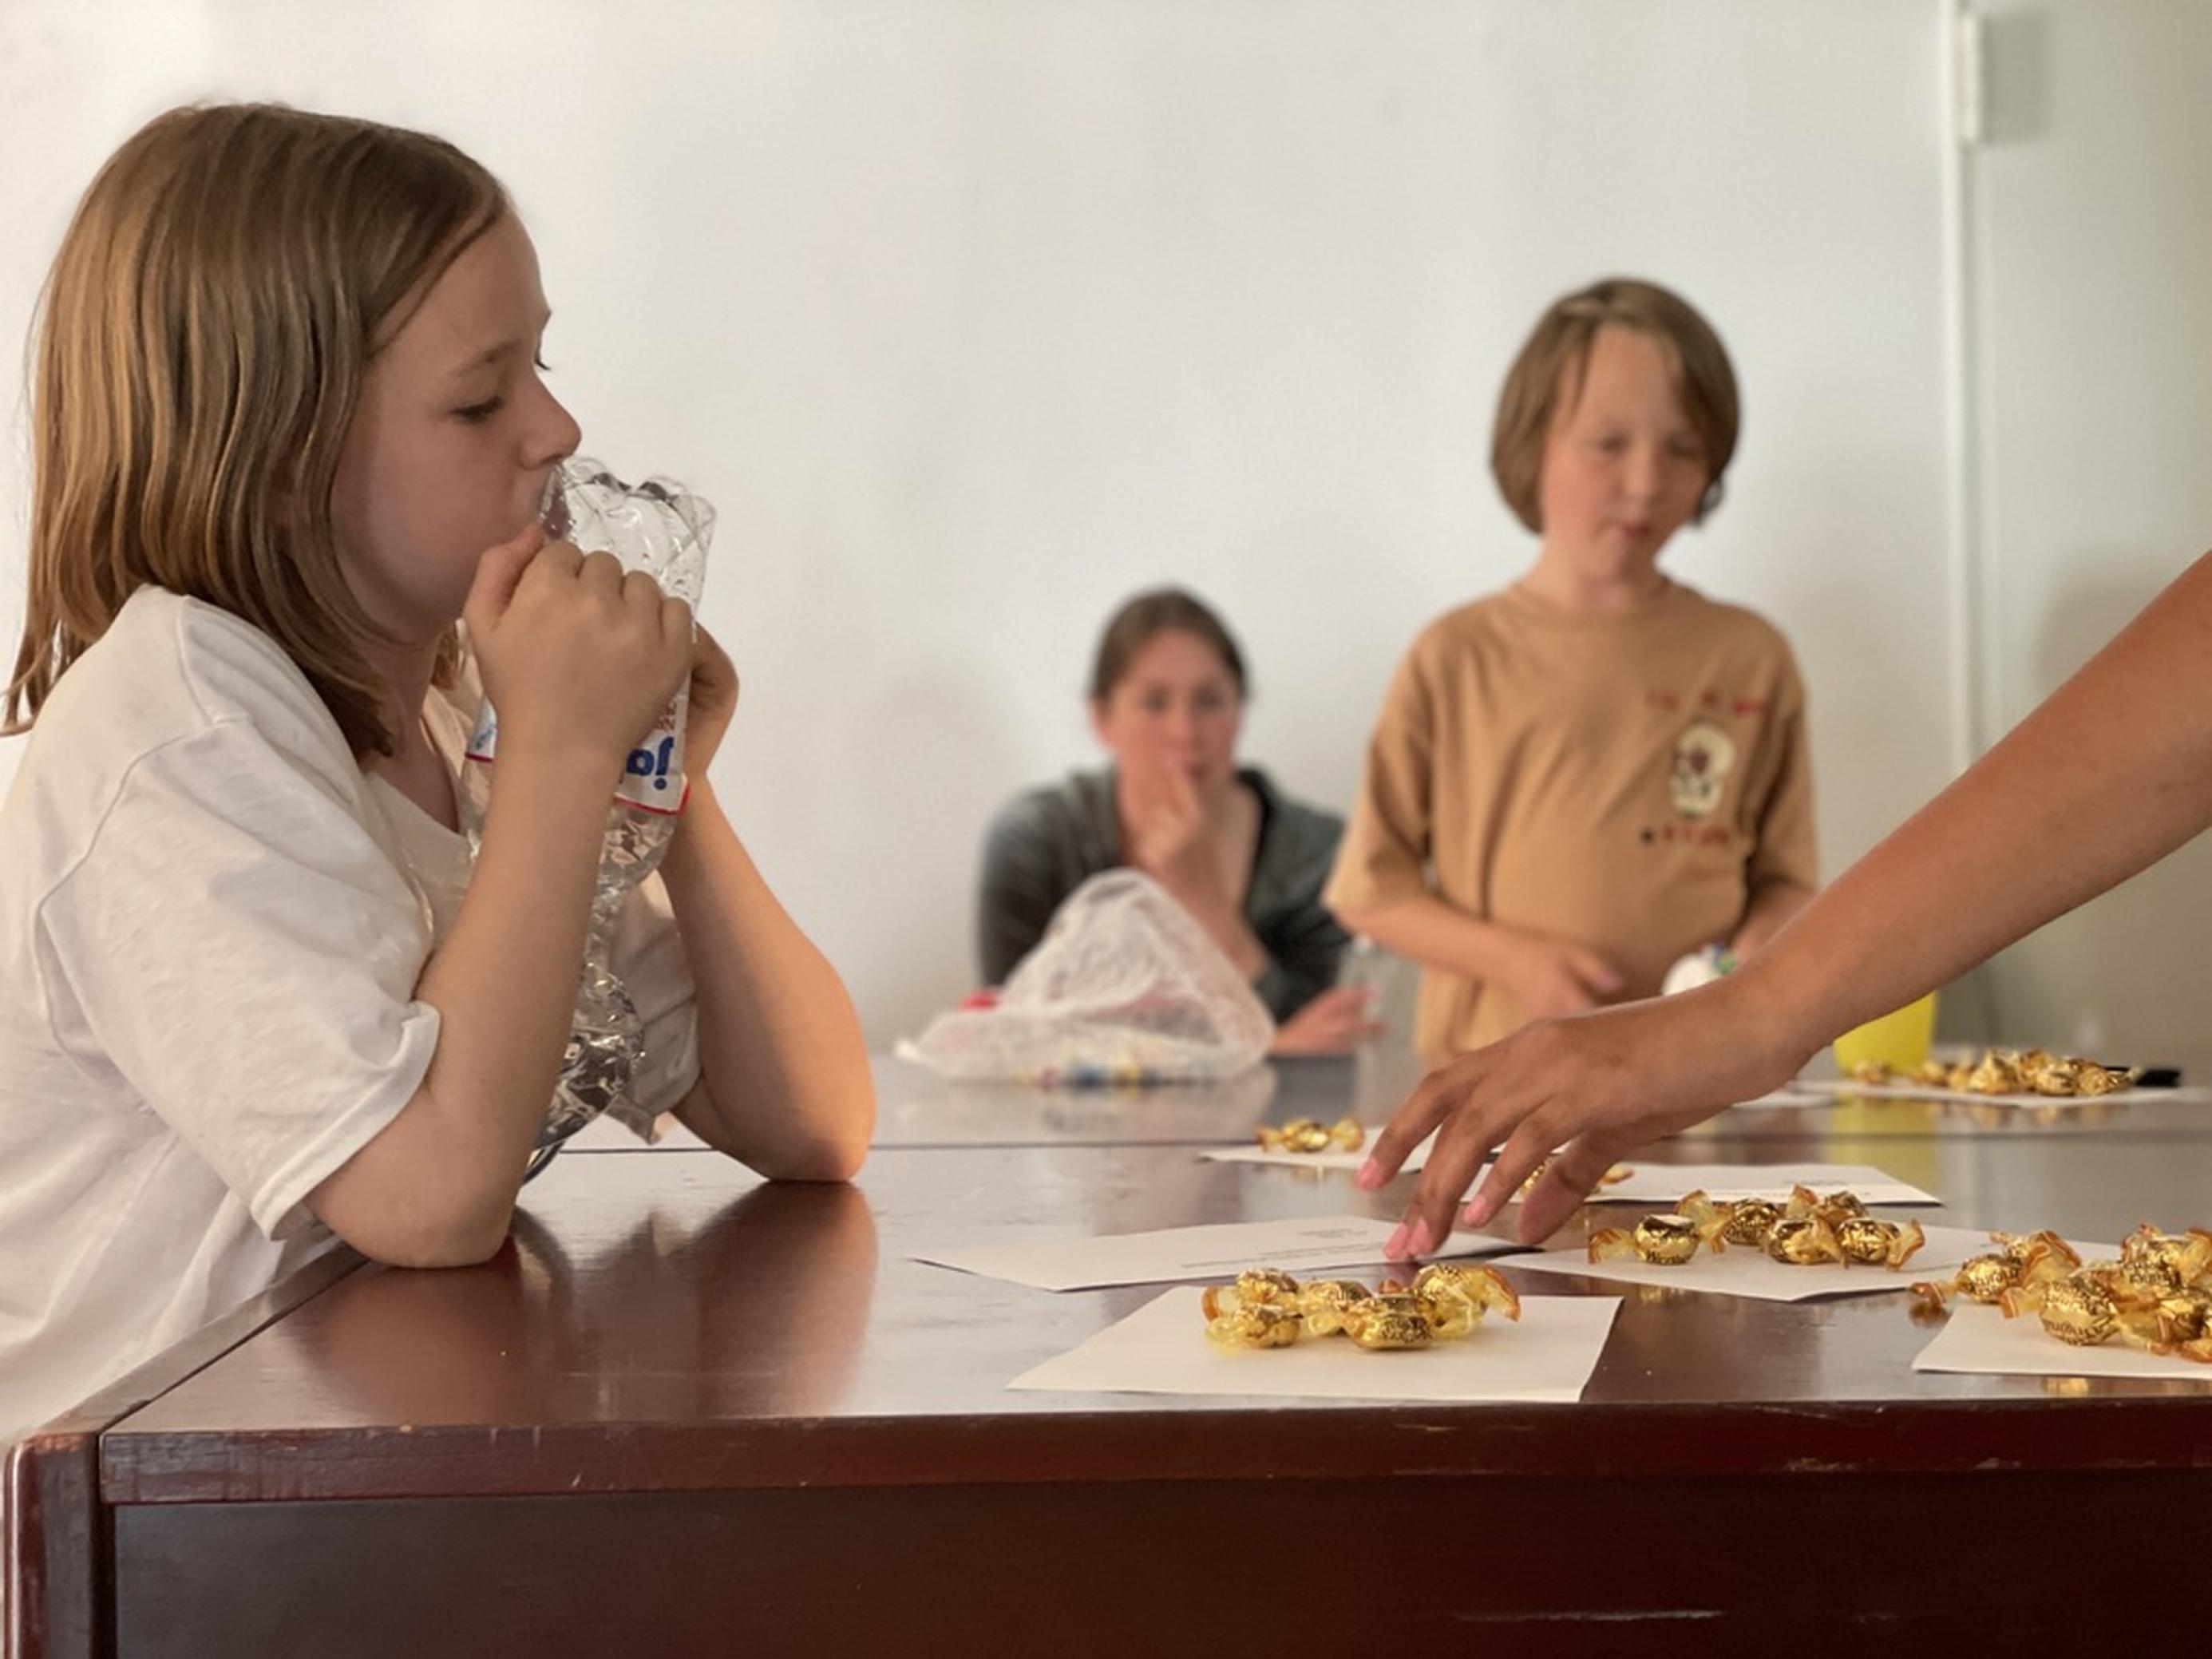 Henri sieht Alicia beim Verteilen der Bonbons, also Geldbeträge, zu. Im Hintergrund sieht man Henri (8) am Tisch und dahinter eine Teilnehmerin aus dem Workshop, die den Jugendlichen zusieht.